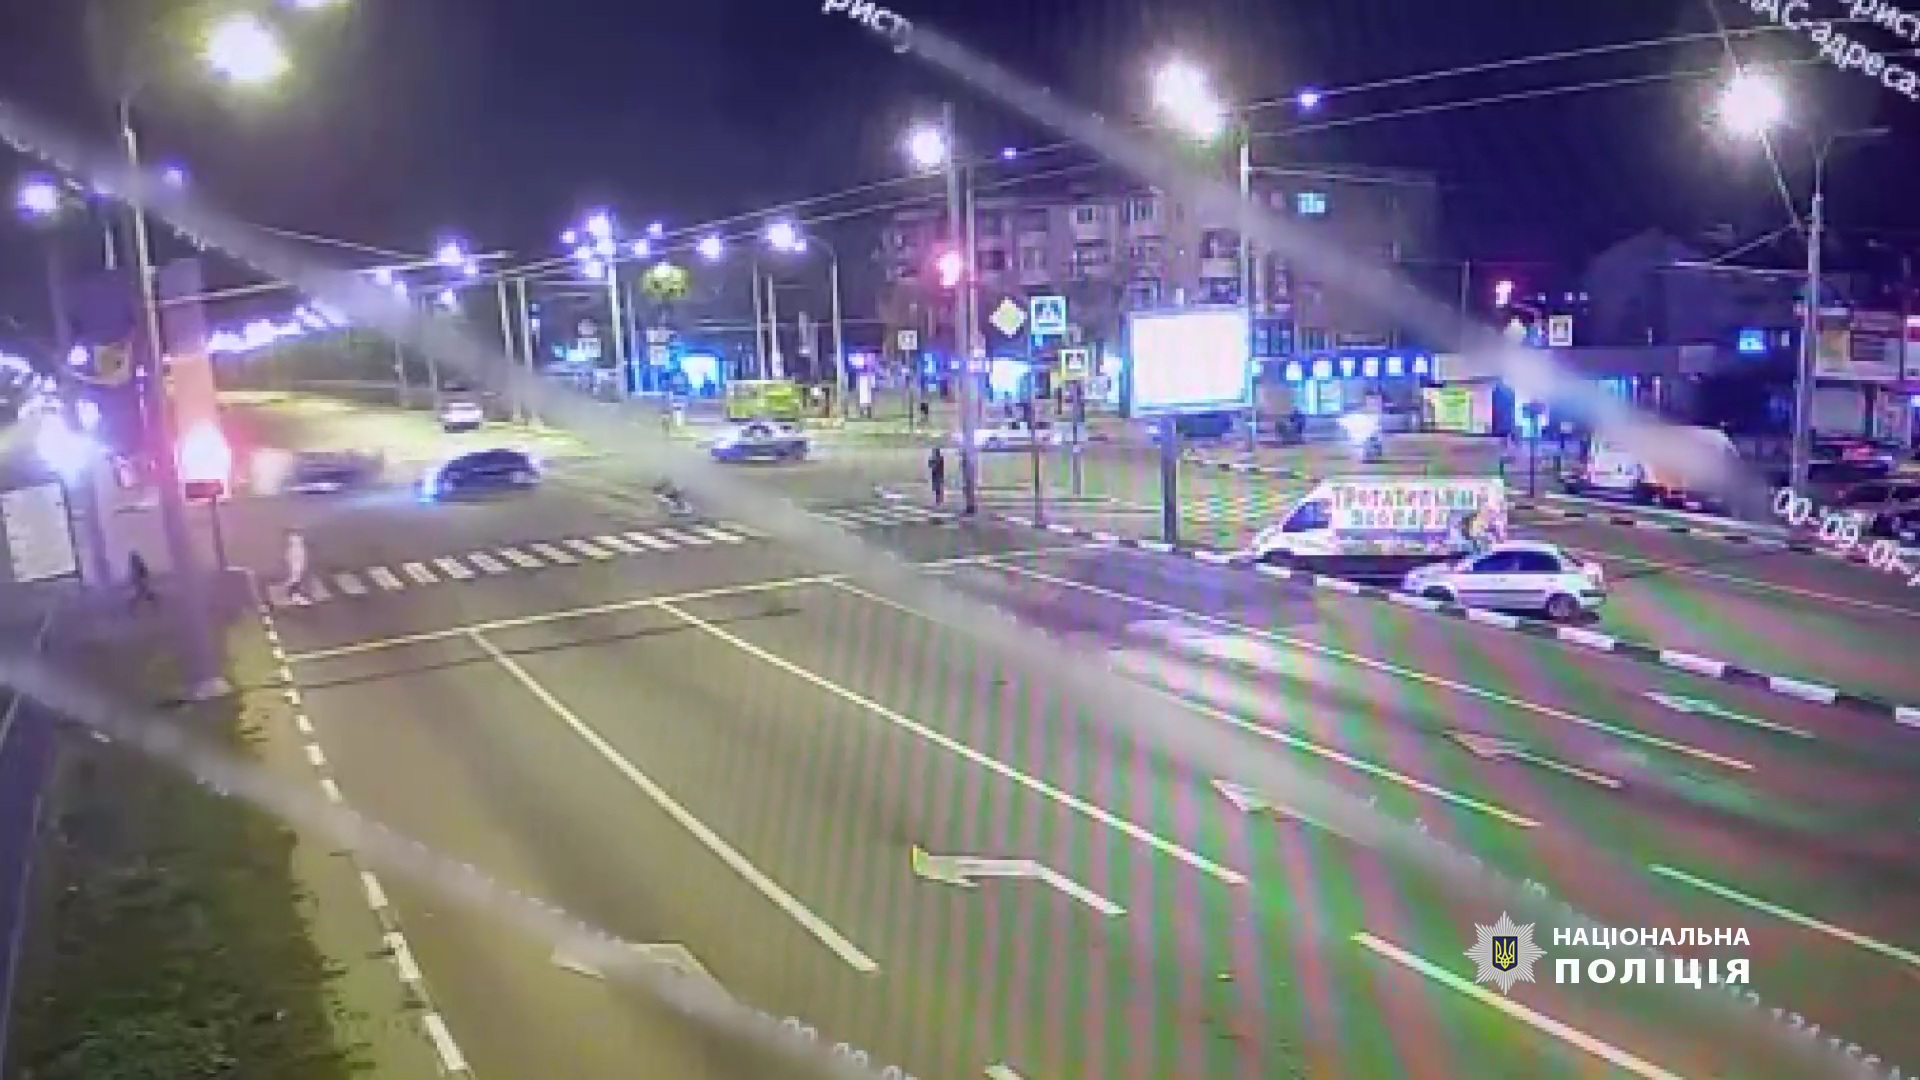 В Харькове на бешеной скорости Infiniti врезался в авто, есть погибшие  – Полиция